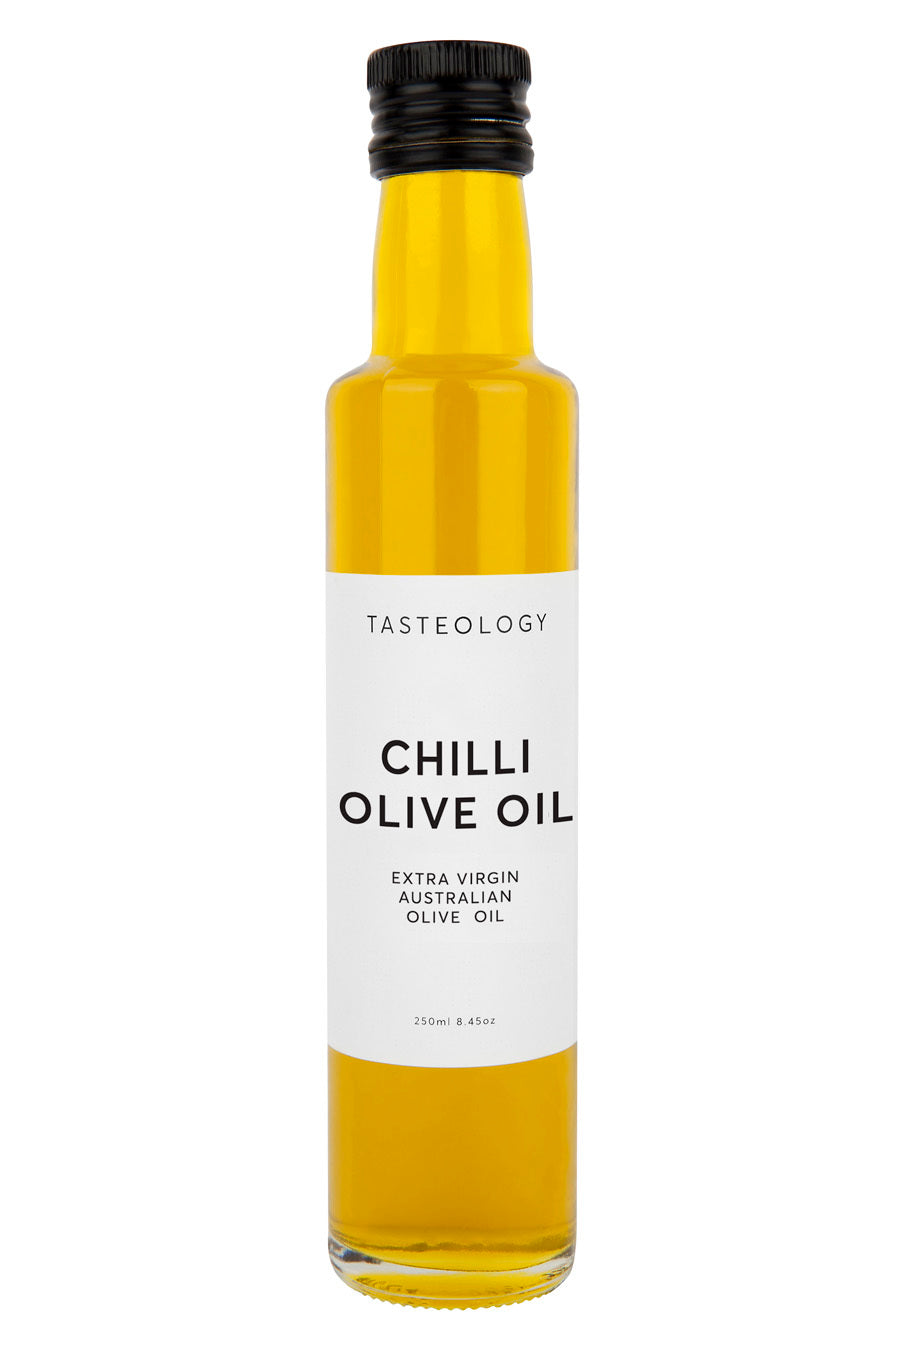 Chilli Olive Oil 250g